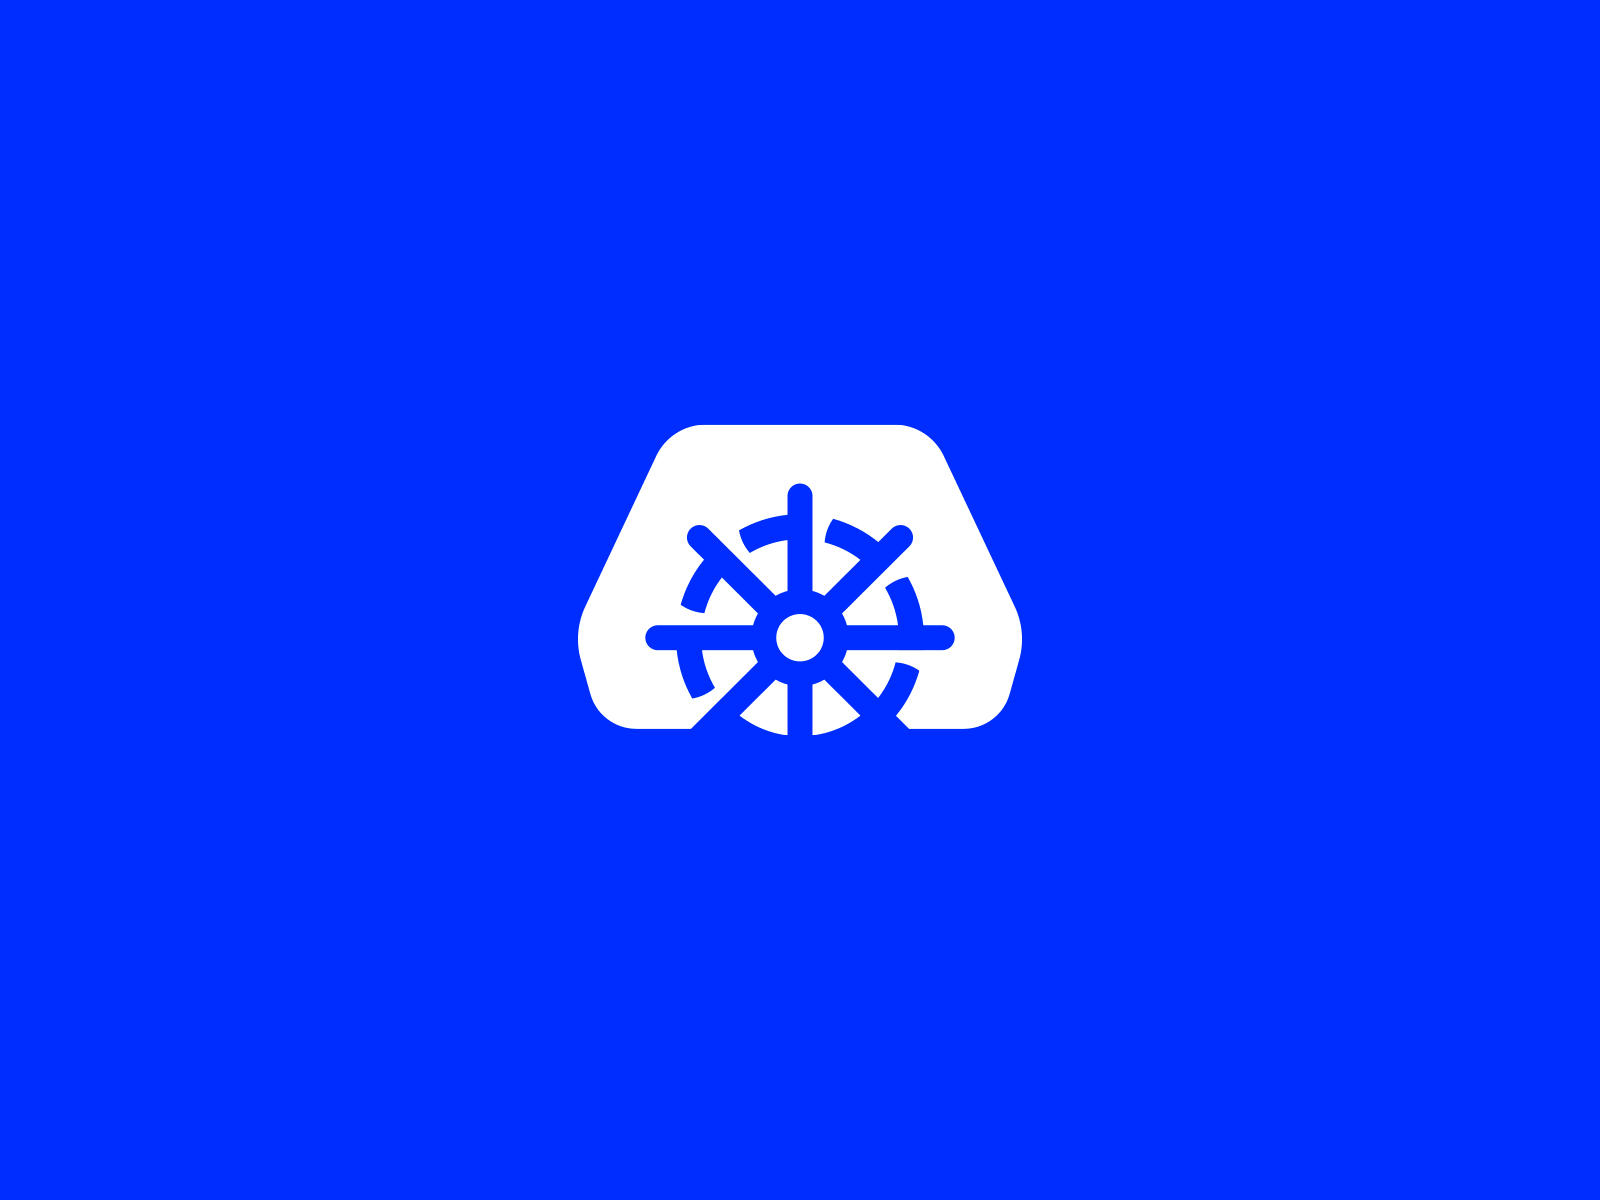 Deckhouse Logo Redesign ver. 03